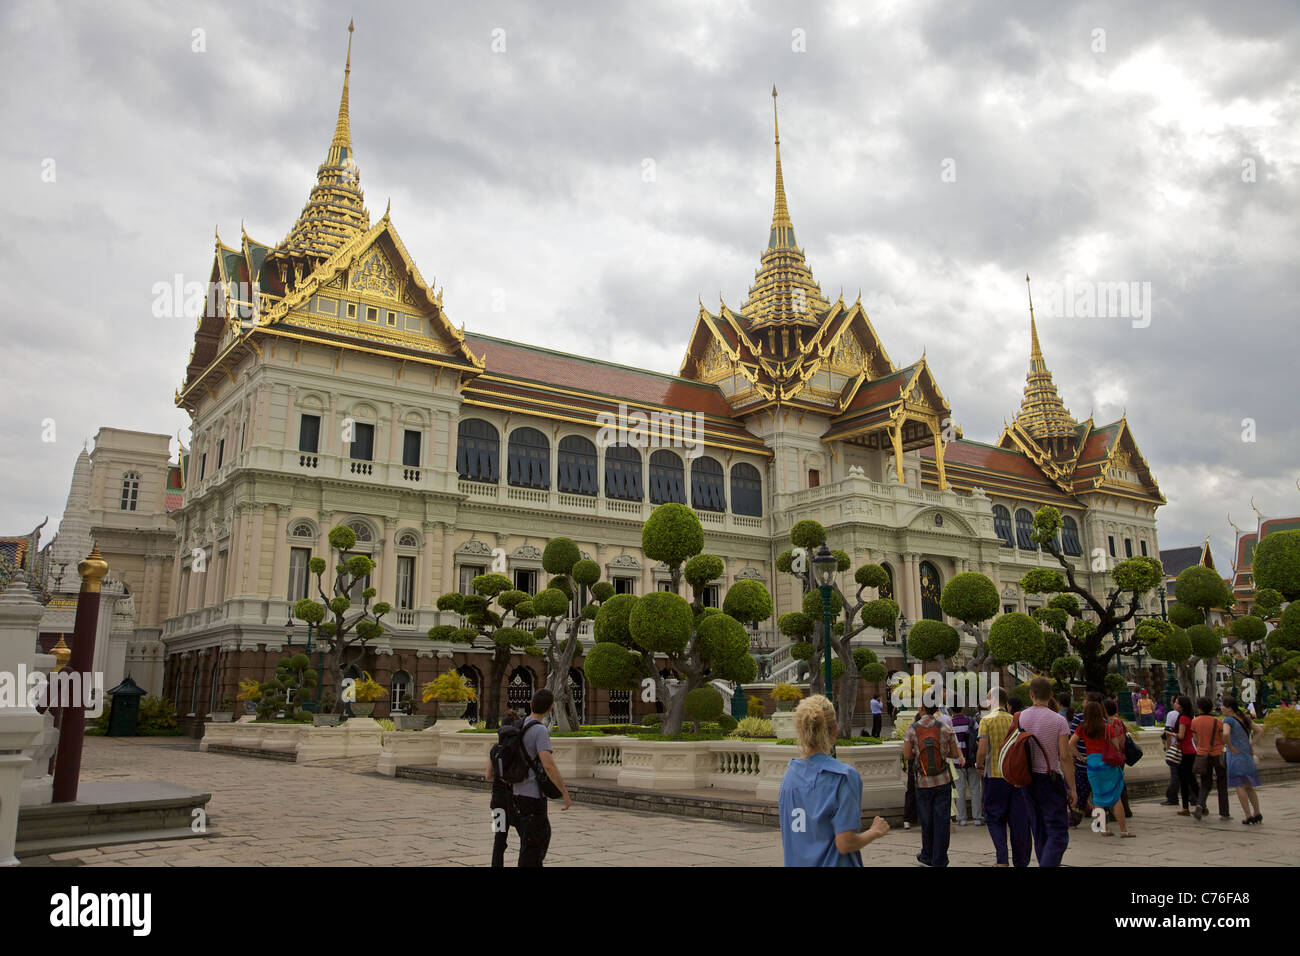 The Royal Palace, Bangkok, Thailand Stock Photo